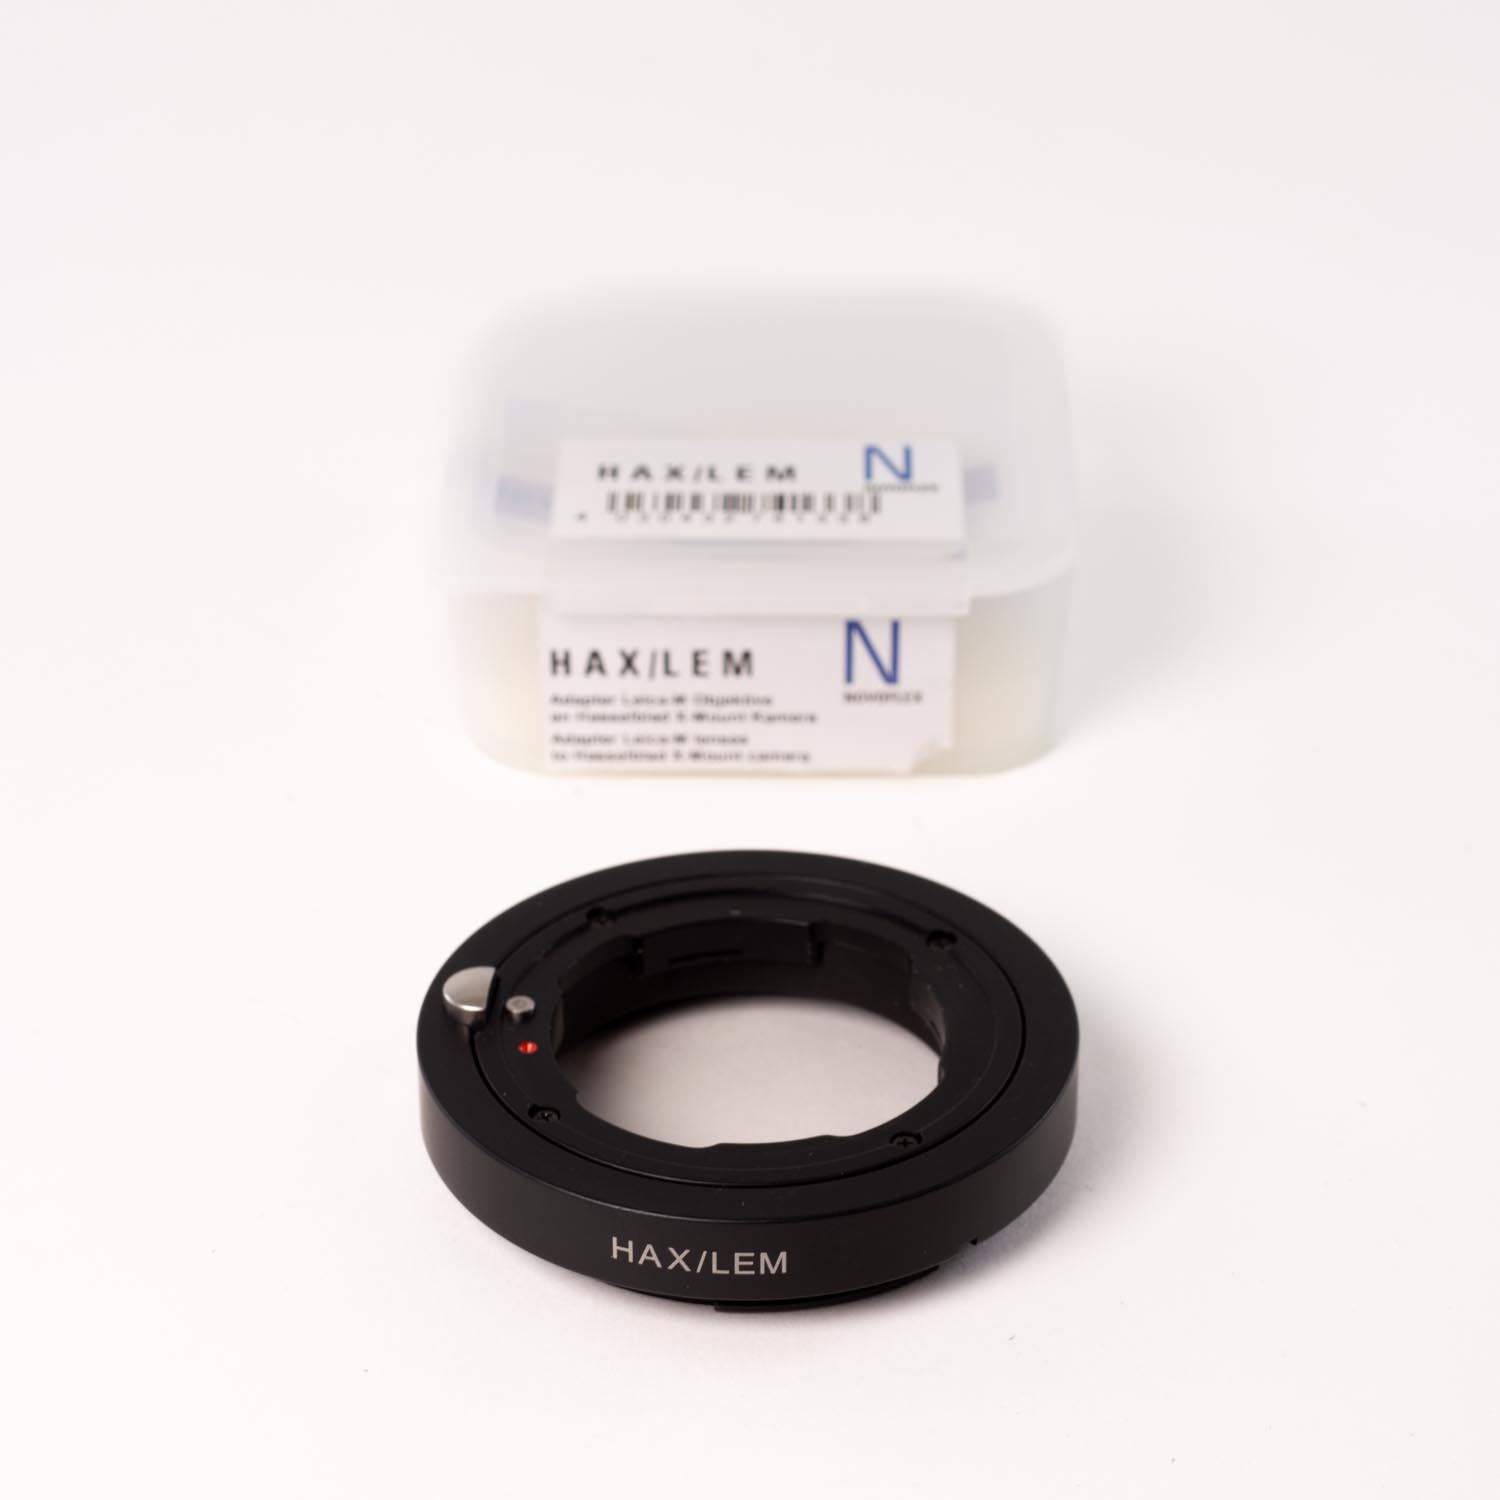 TVignette pour Novoflex adaptateur Objectif Leica M vers Hasselblad monture X *A+*